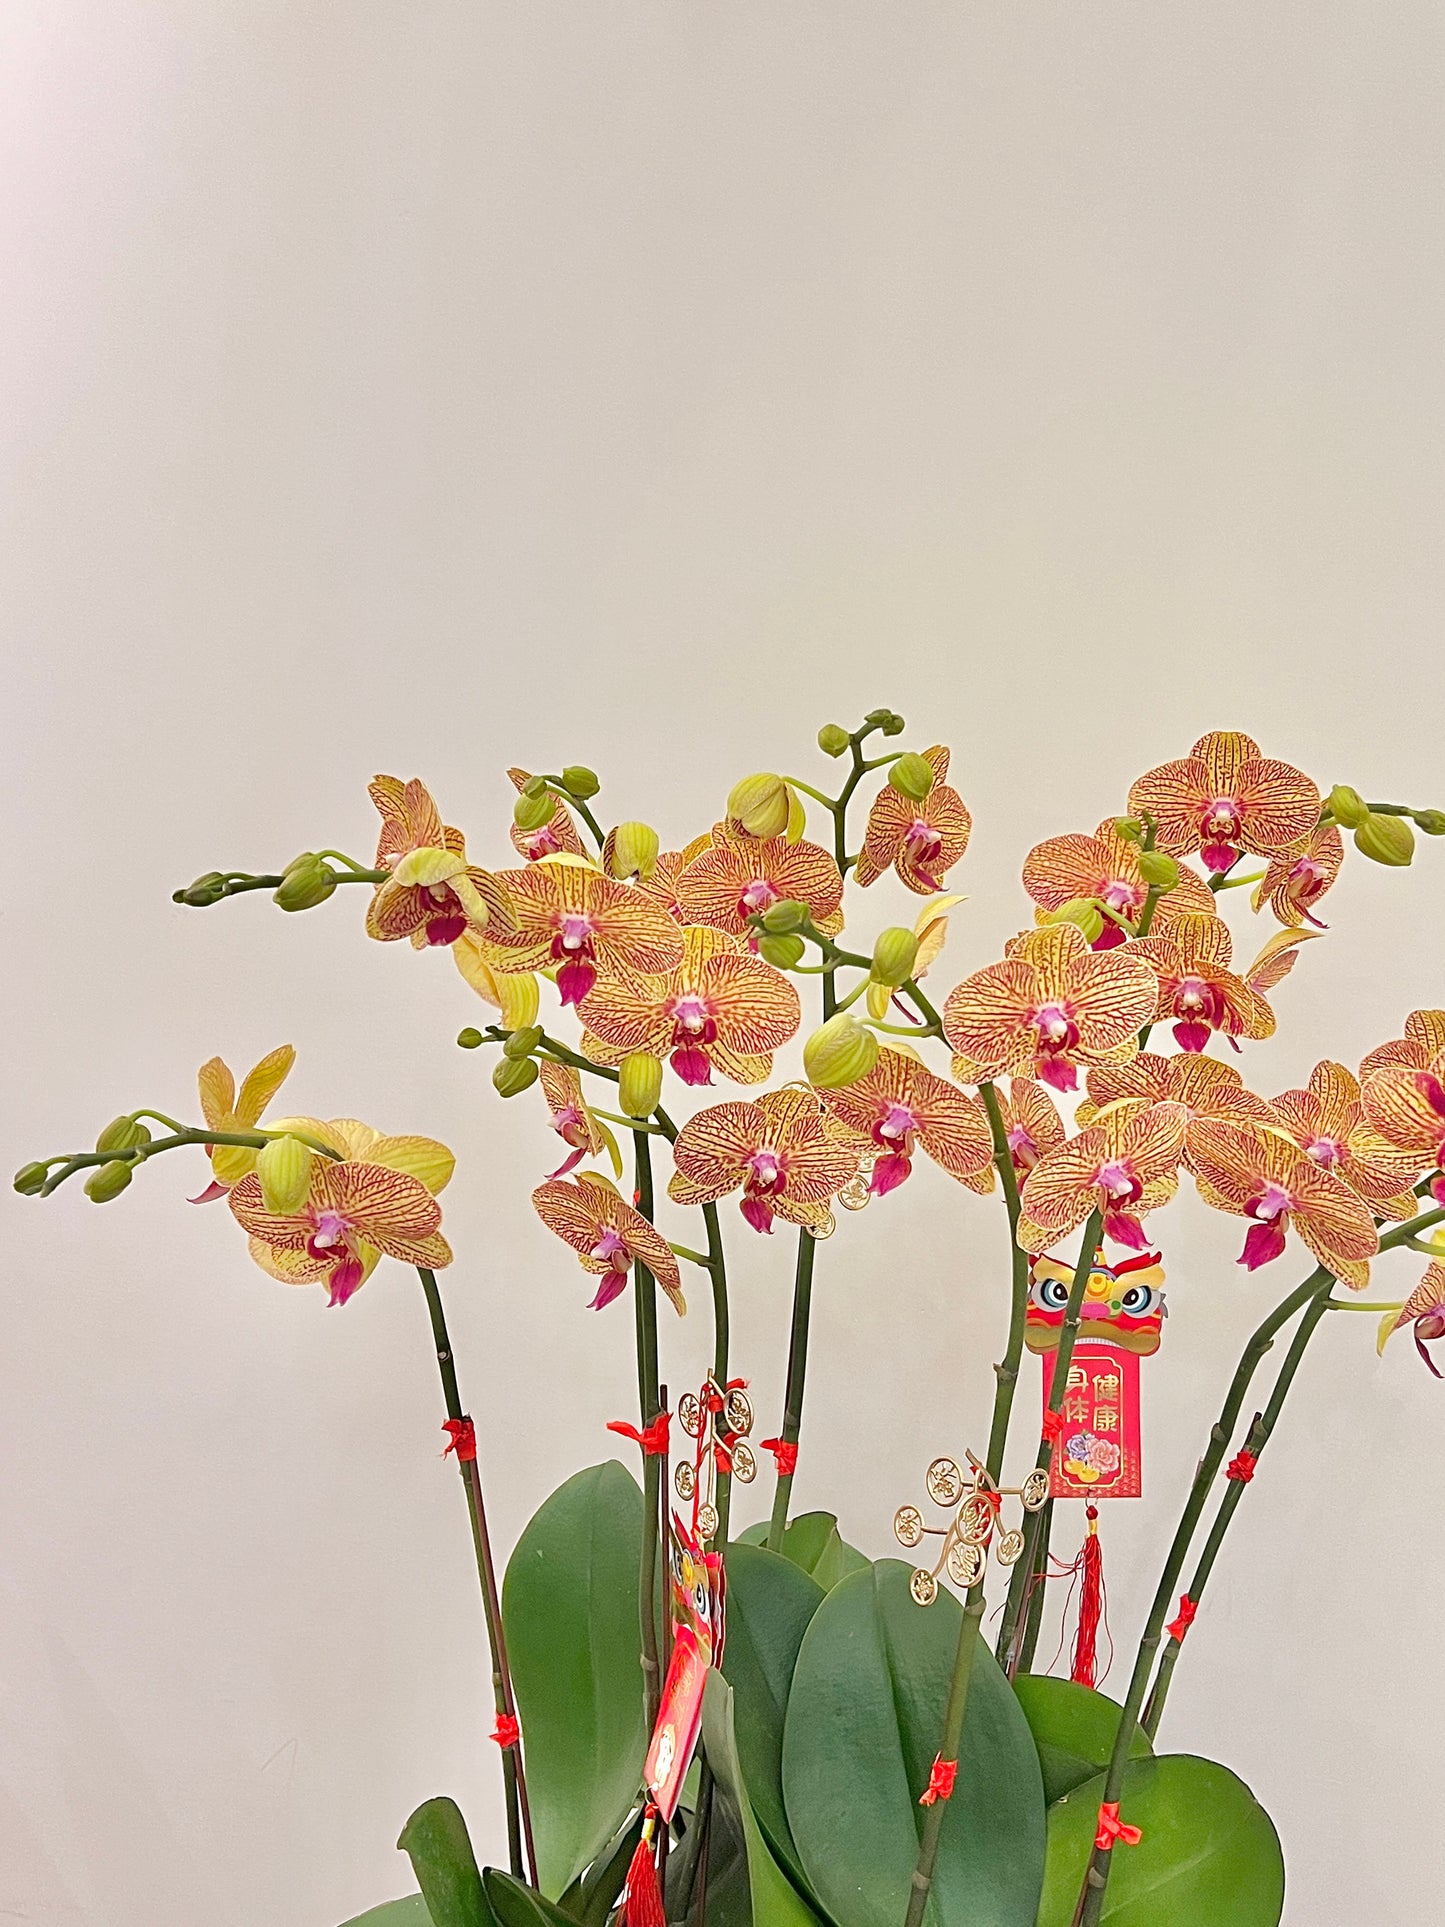 蘭花盆栽擺設 Orchid #3